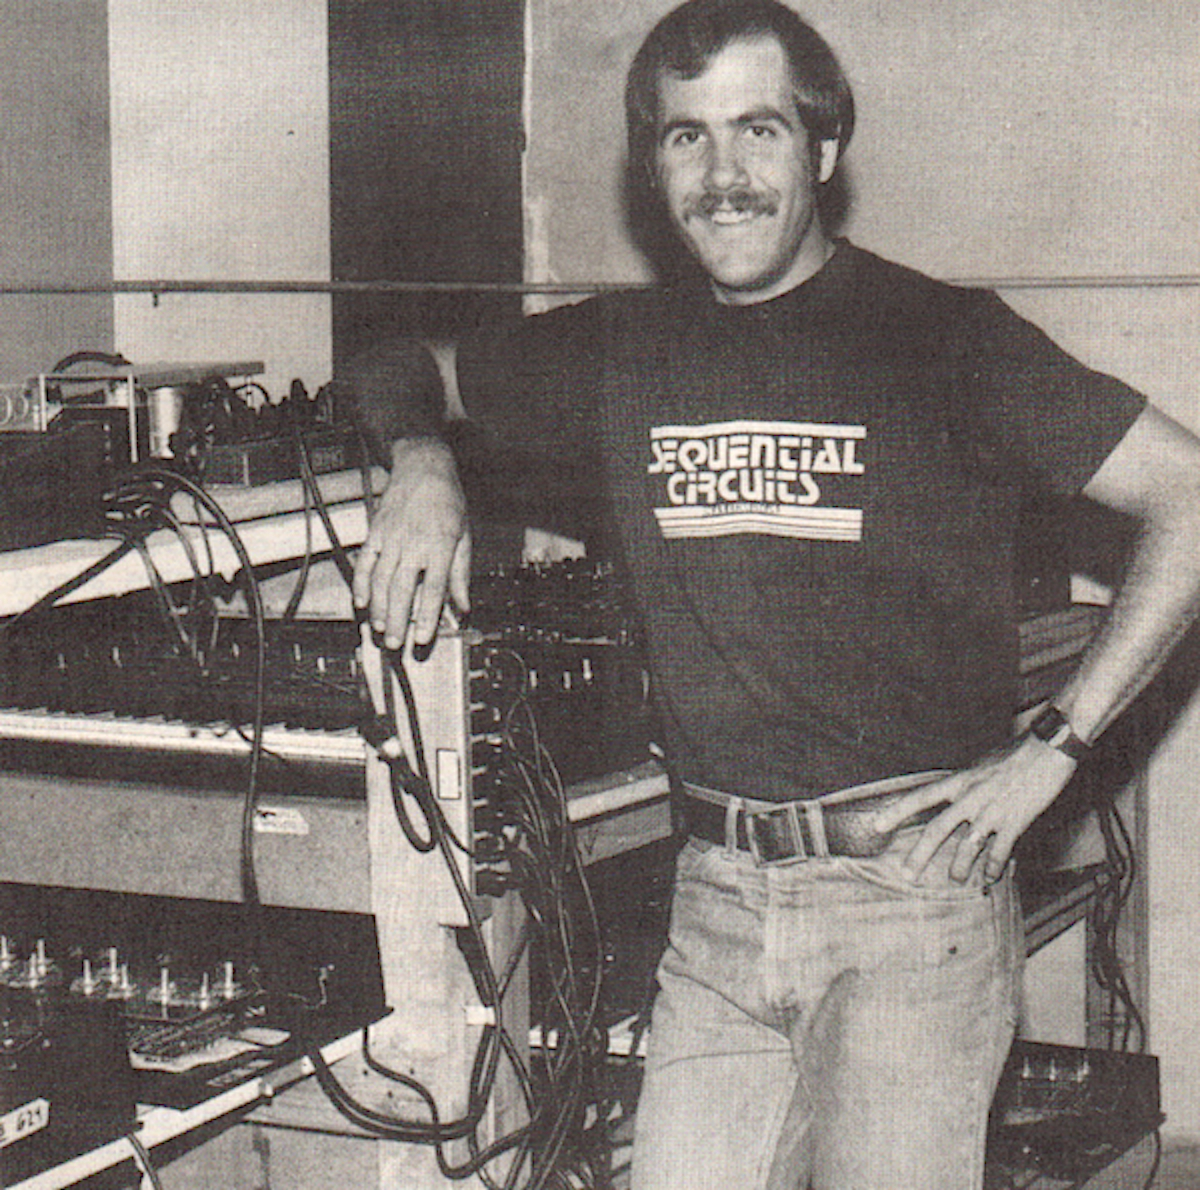 Dave Smith at Sequential Circuits in San Jose, circa 1978.